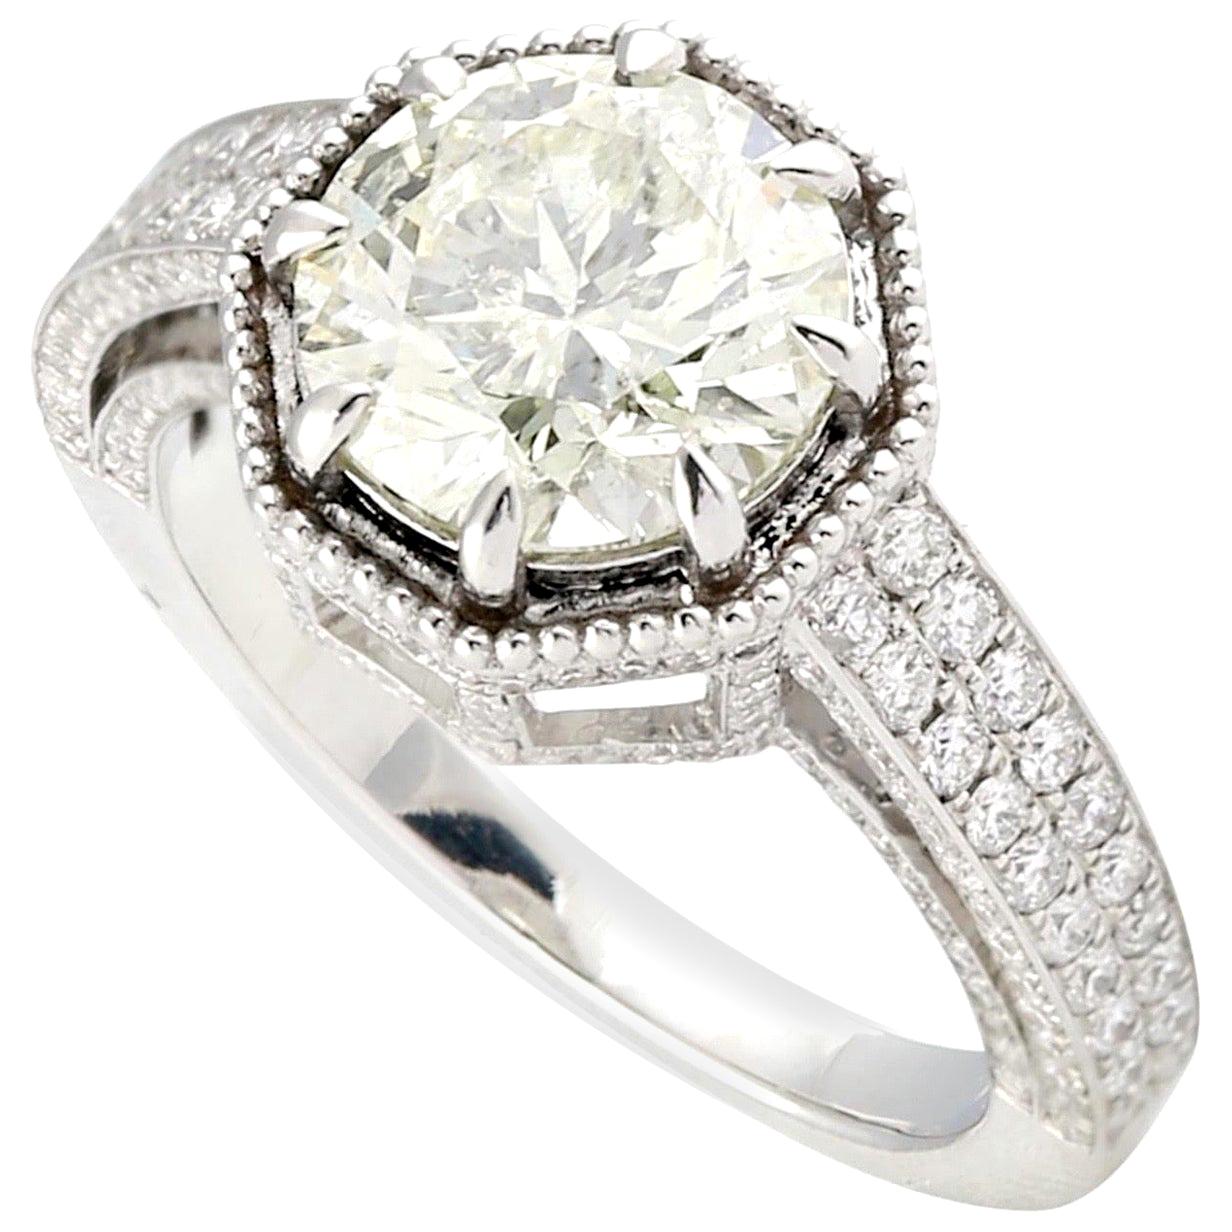 For Sale:  3.42 Carat Diamond 18 Karat Gold Engagement Ring